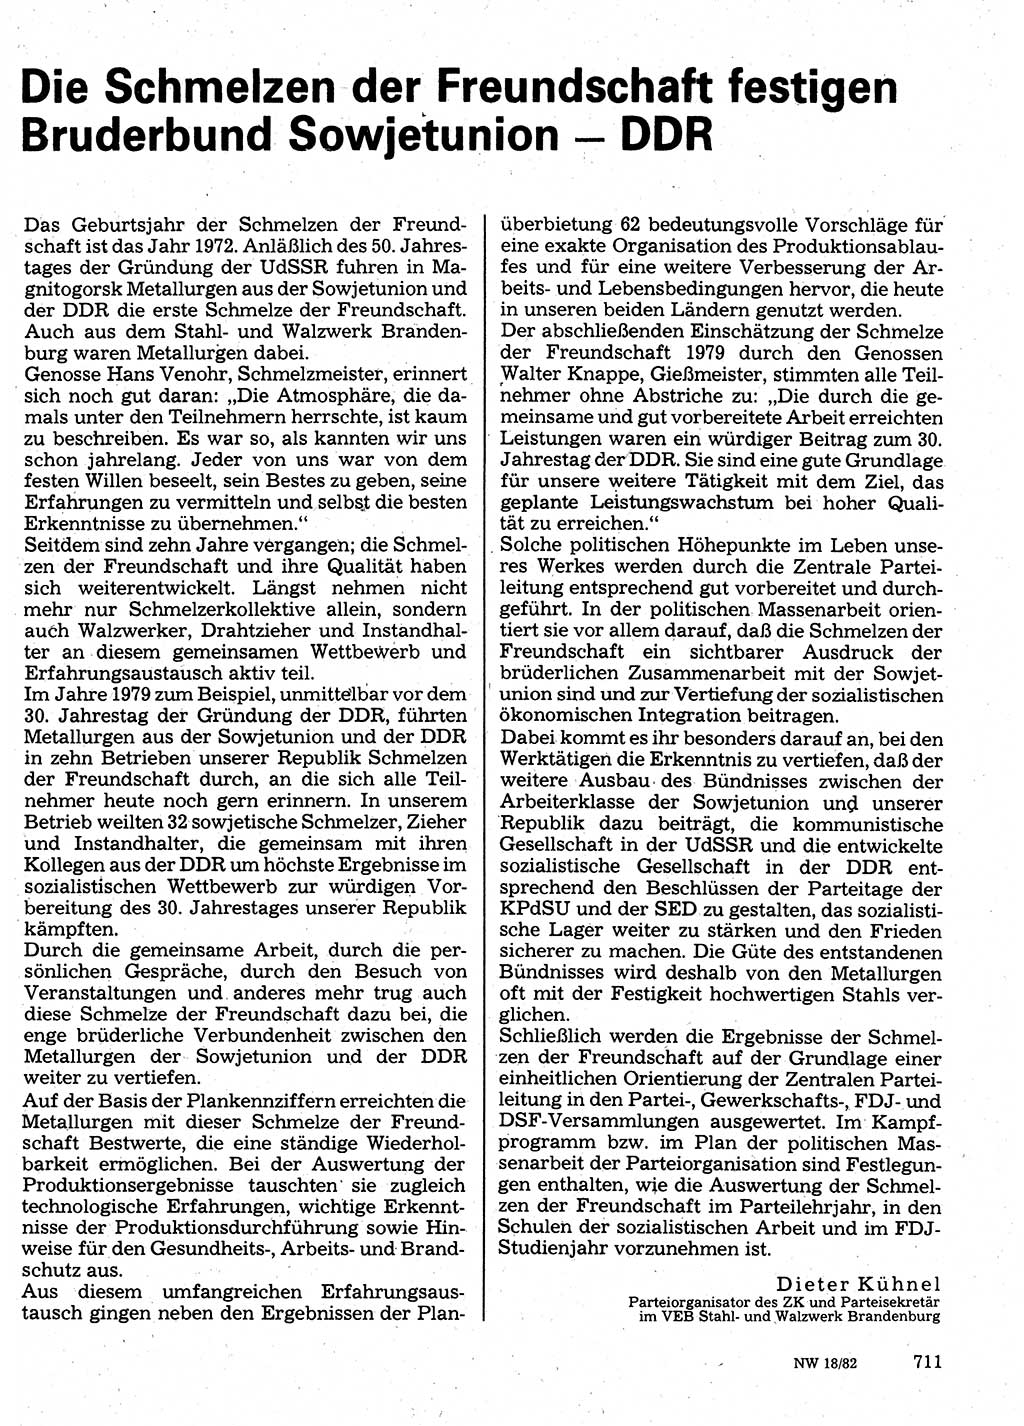 Neuer Weg (NW), Organ des Zentralkomitees (ZK) der SED (Sozialistische Einheitspartei Deutschlands) für Fragen des Parteilebens, 37. Jahrgang [Deutsche Demokratische Republik (DDR)] 1982, Seite 711 (NW ZK SED DDR 1982, S. 711)